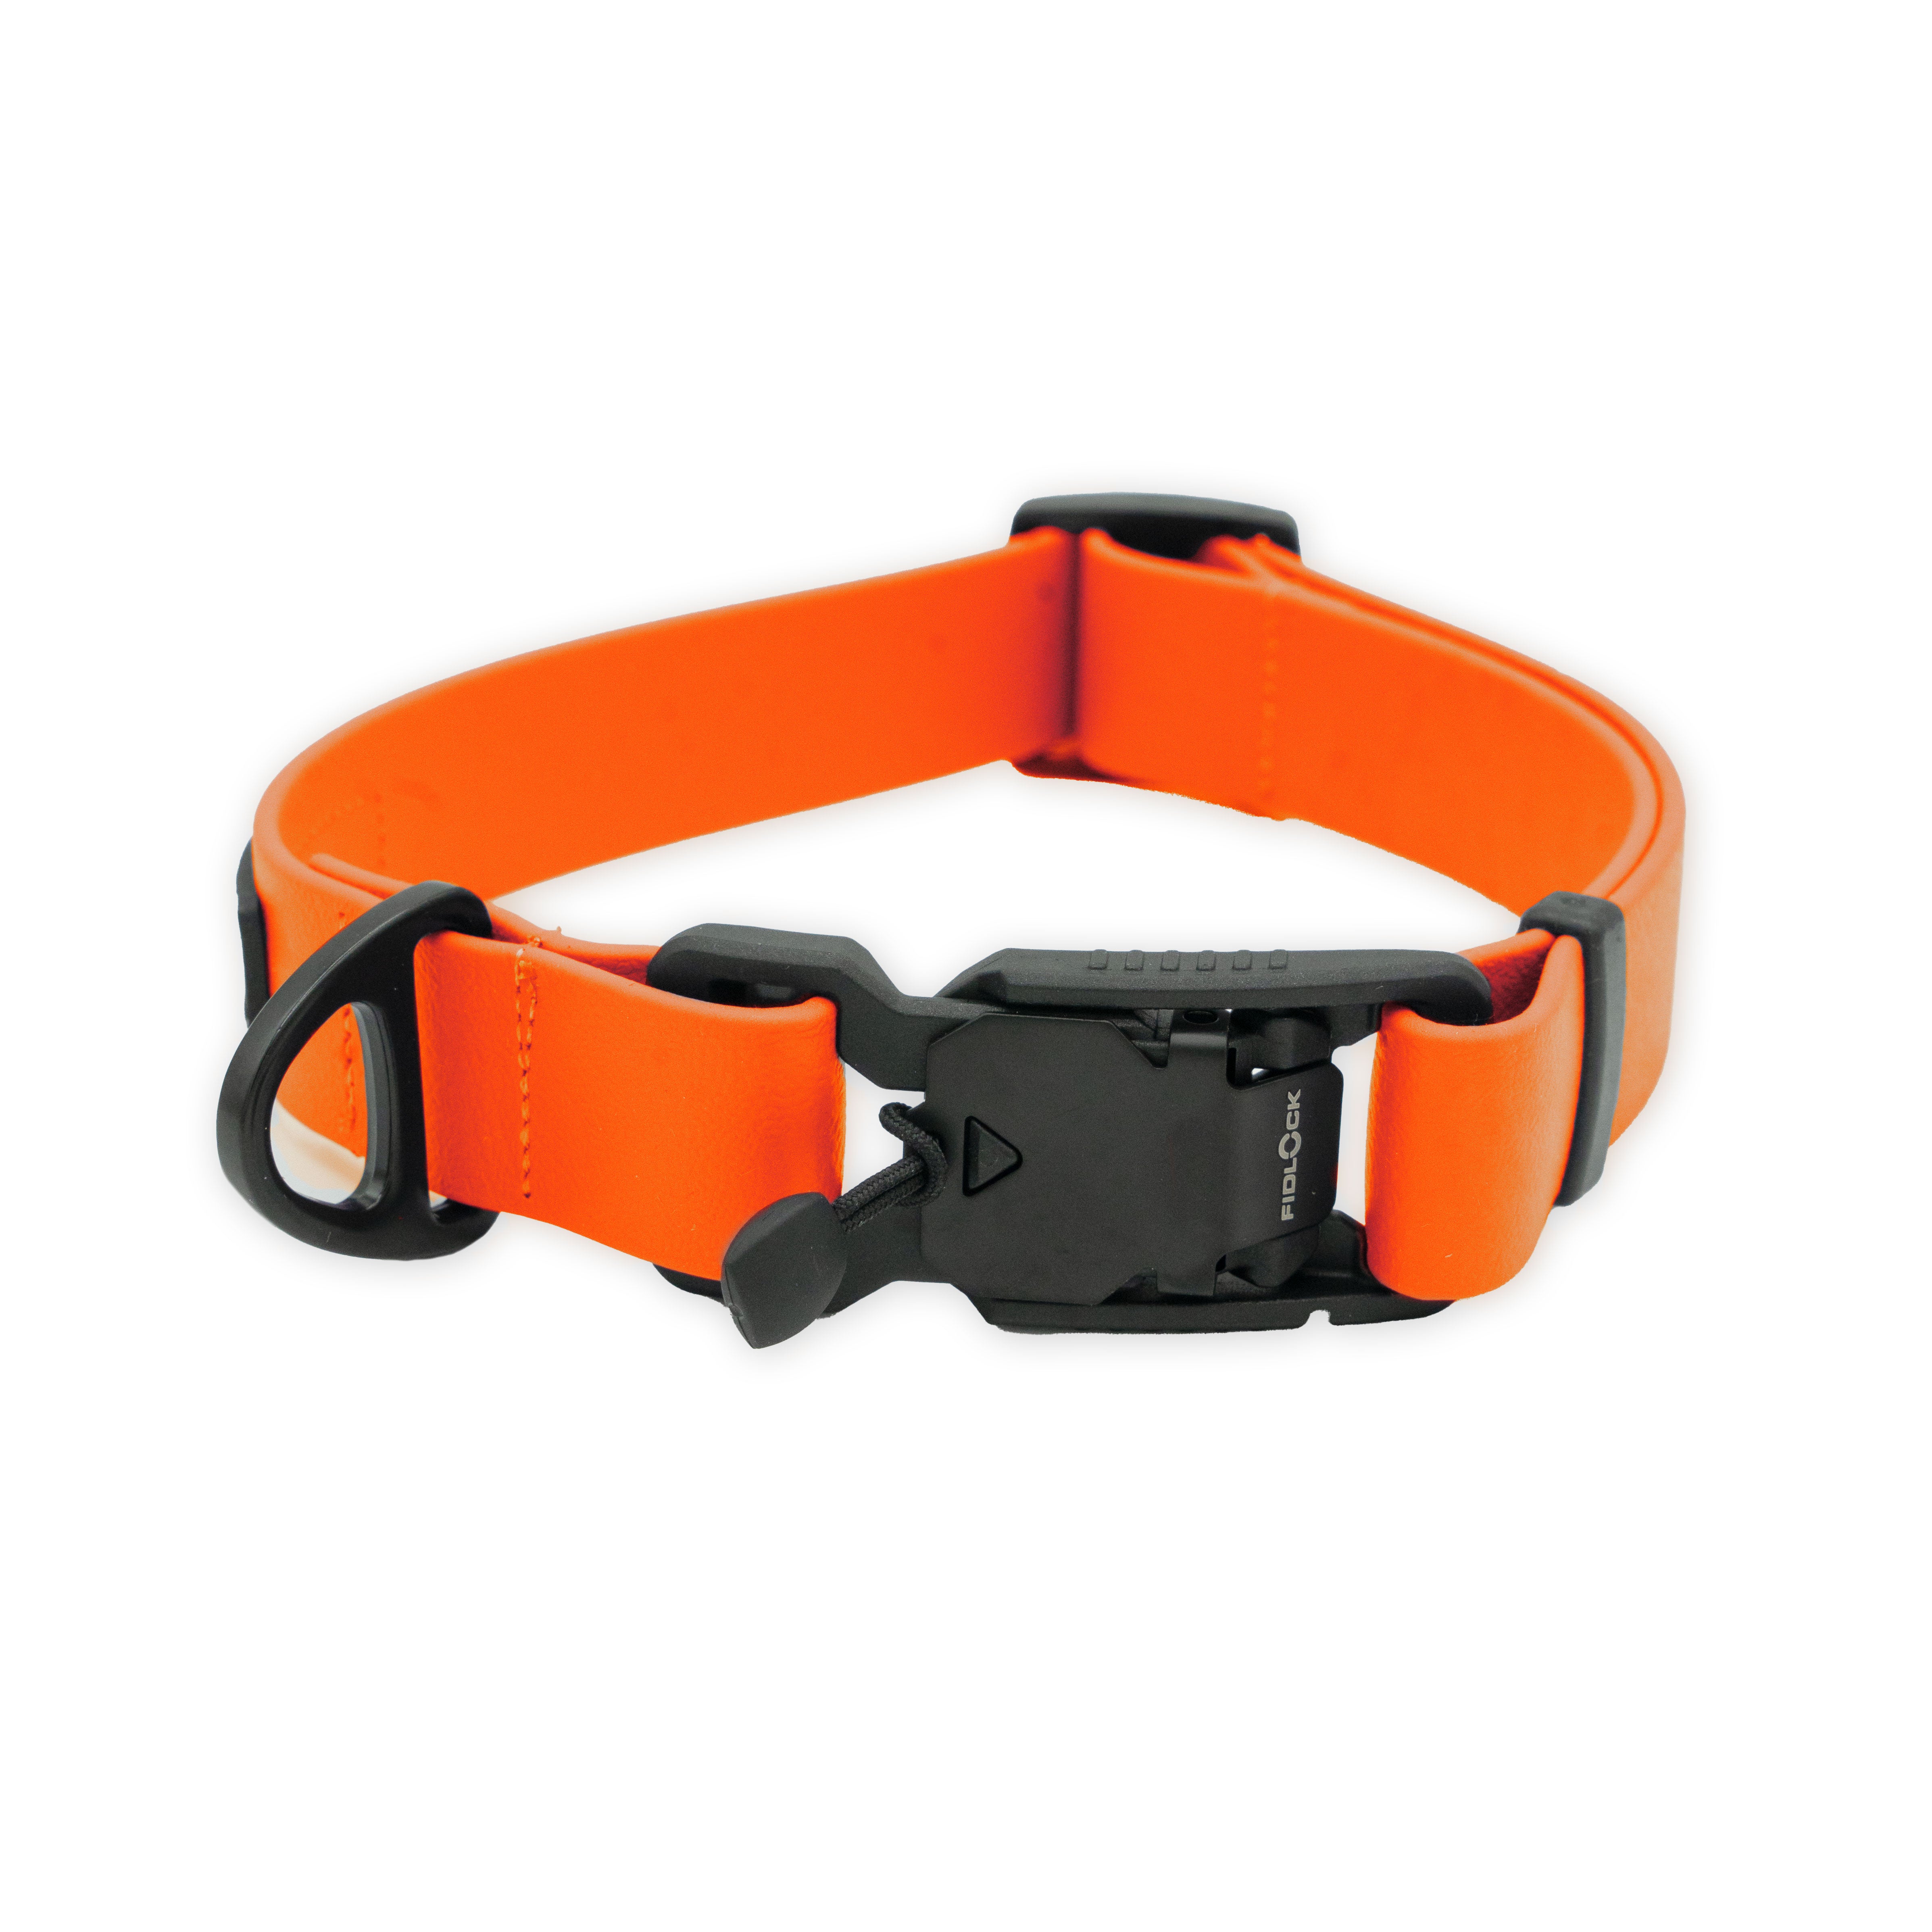 Hejnika Merida Biothane Halsband Neon Orange stufenlos verstellbares Biothanehalsband